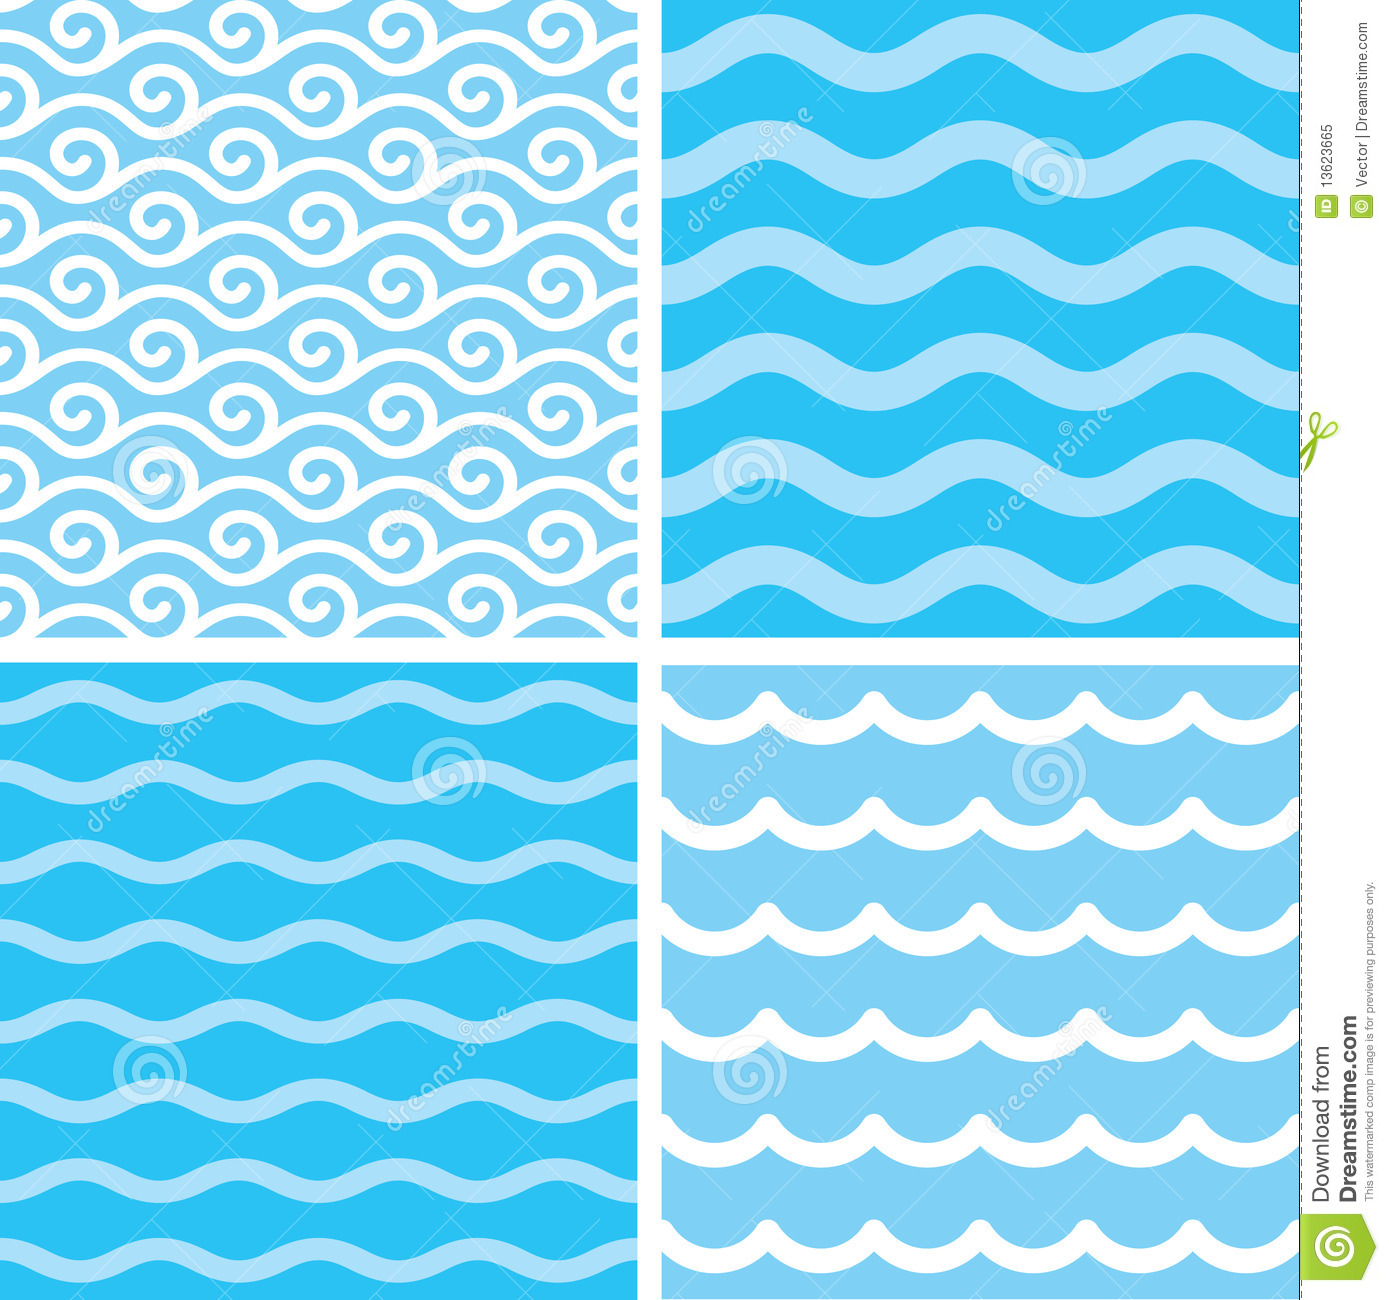 Water Wave Pattern Clip Art